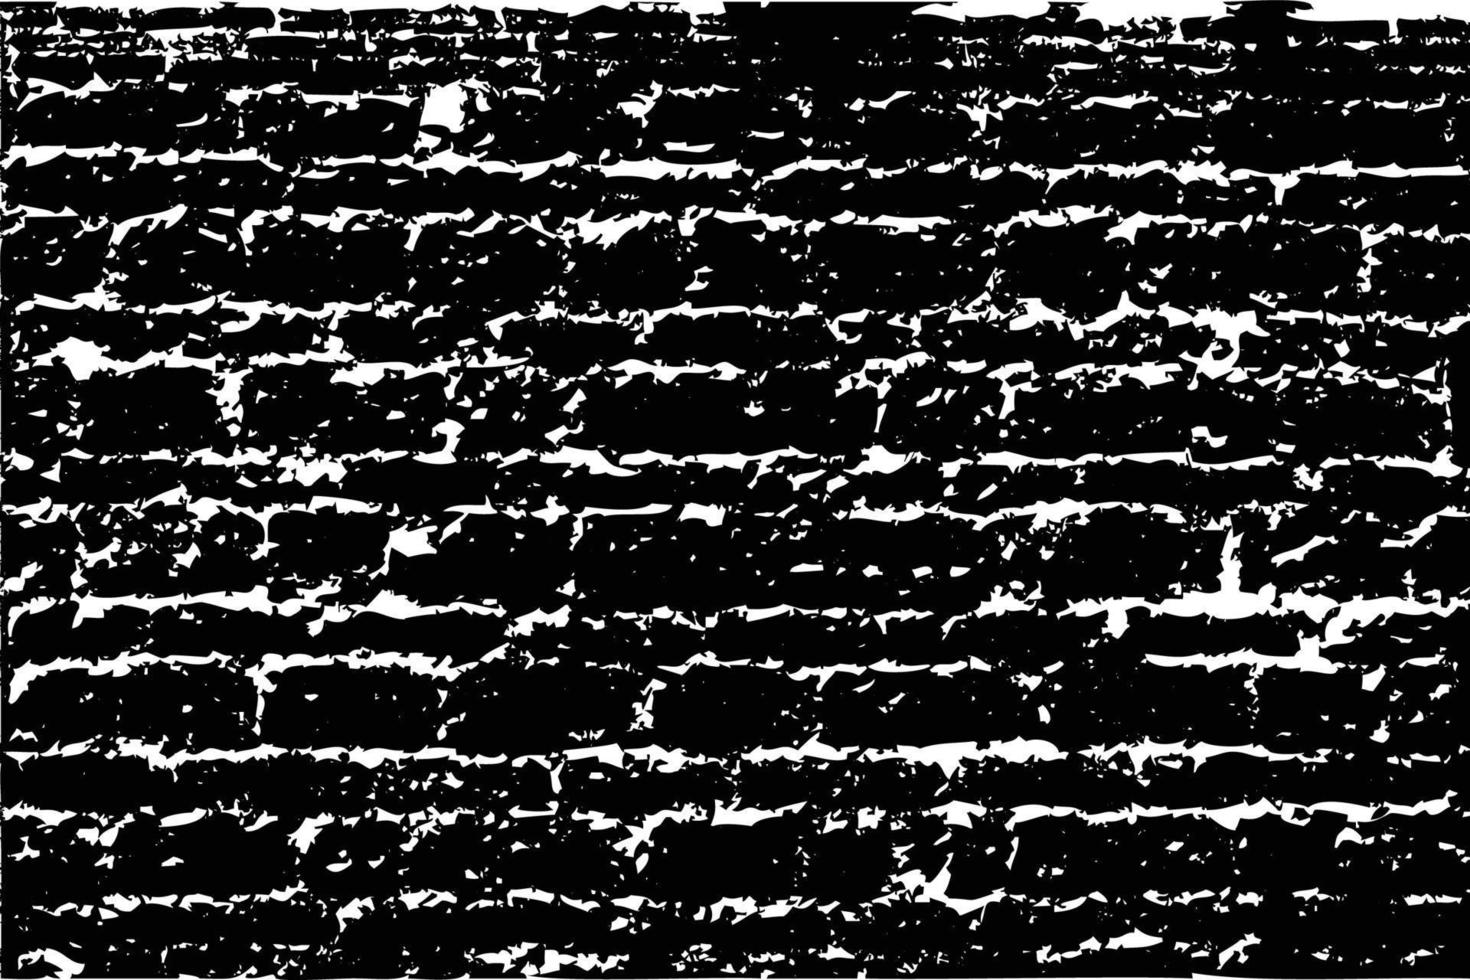 textura de parede escura com efeito de pincel com cores cinza. efeito grunge preto e branco de paredes de tijolos para decoração de modelo. vetor de textura abstrata grunge para elementos de design. cor cinza carvão.